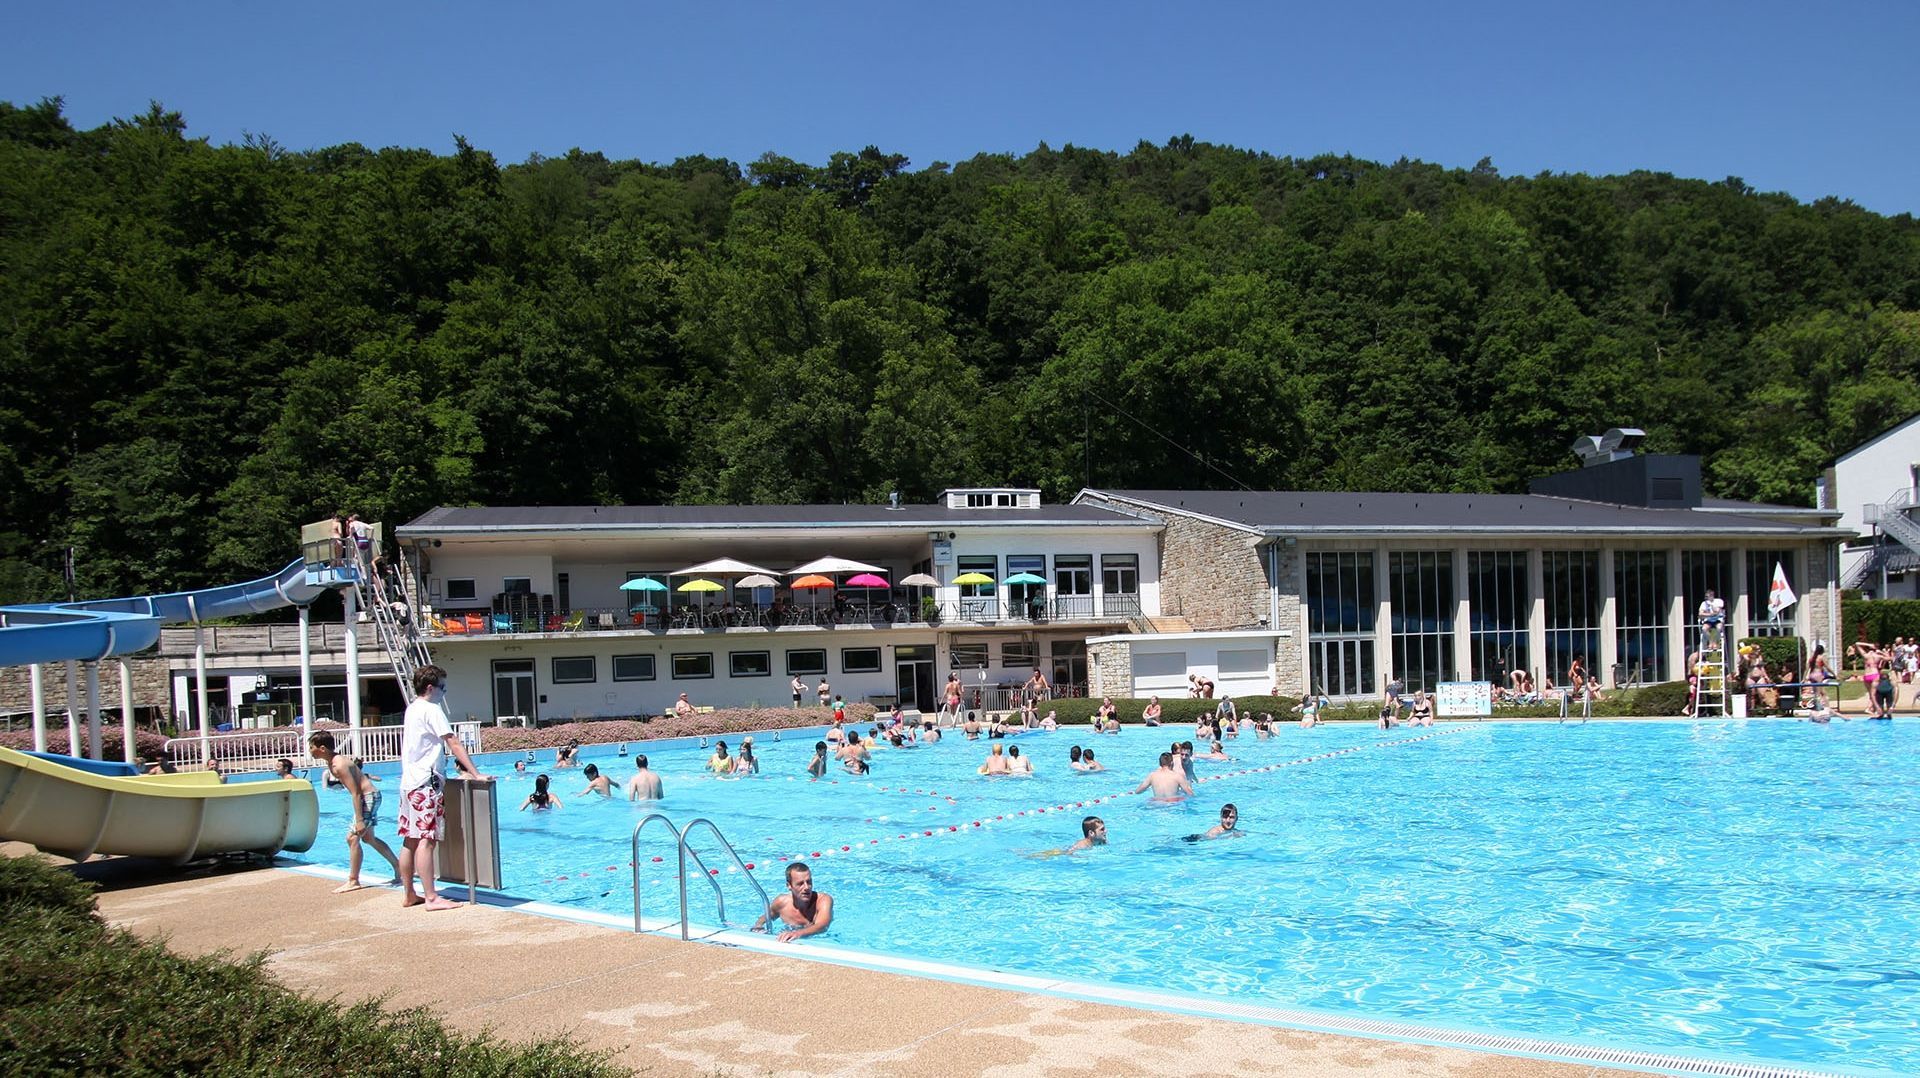 La piscine de Spa ne fonctionnera pas durant l’été faute de budget. Le nouveau complexe n'est pas attendu avant 2023.